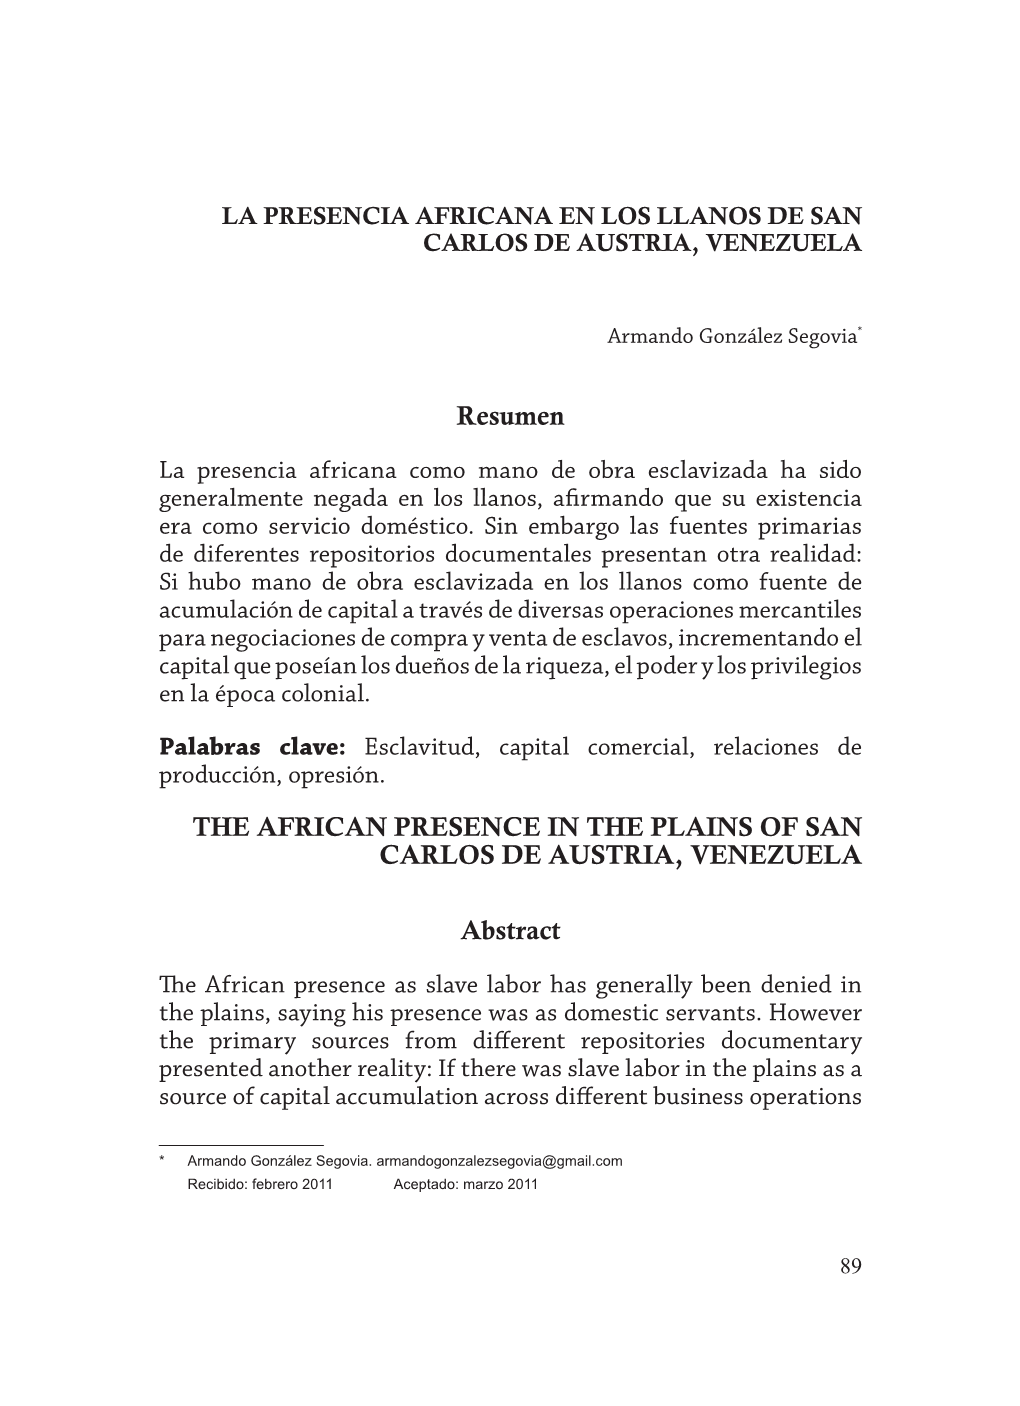 La Presencia Africana En Los Llanos De San Carlos De Austria, Venezuela